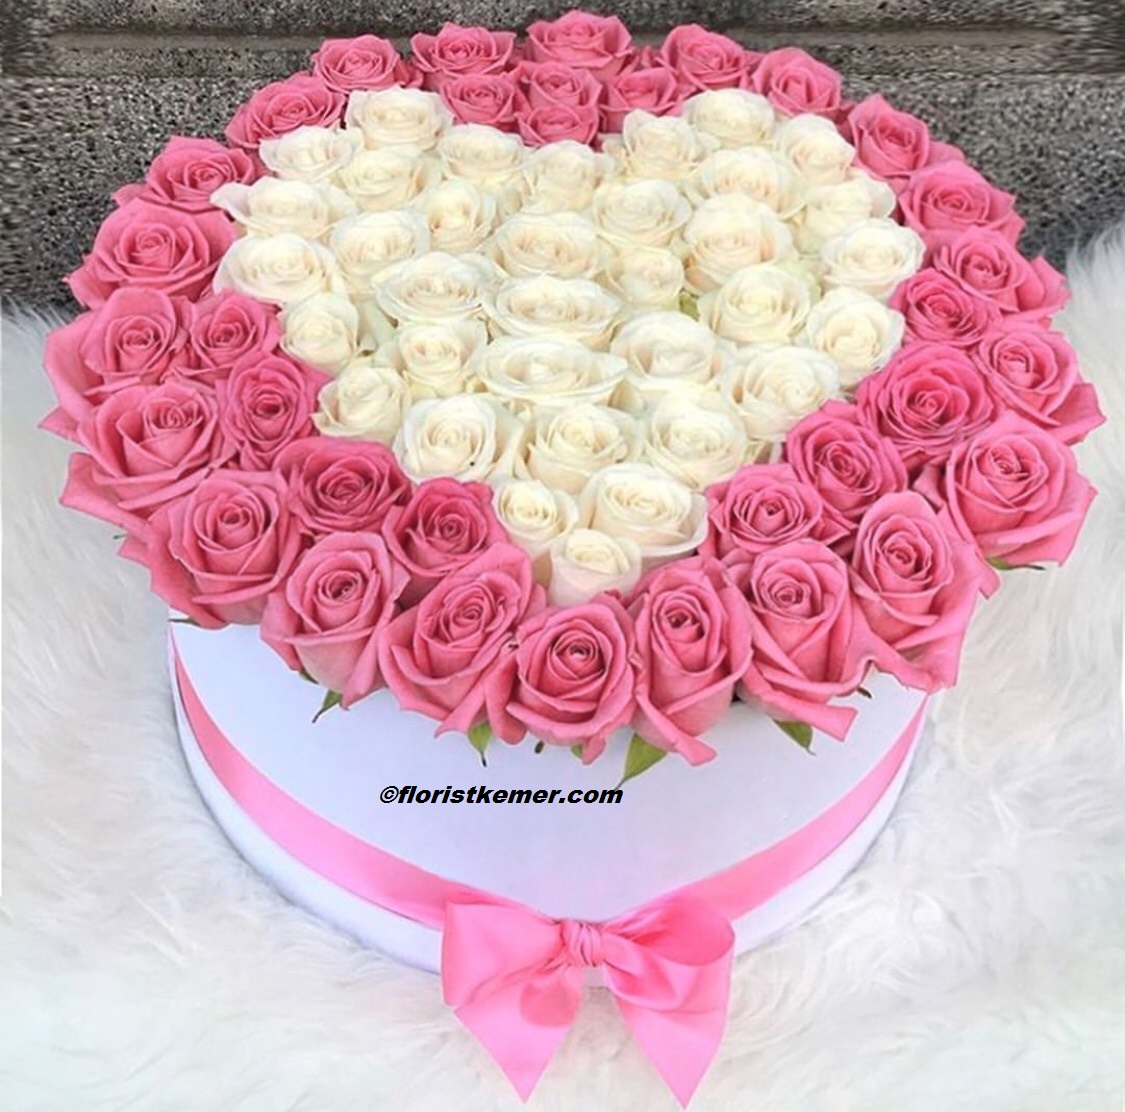  Доставка цветов в Кемер  Сердце Роза Розовая Белая 71 шт. в цилиндрической коробке